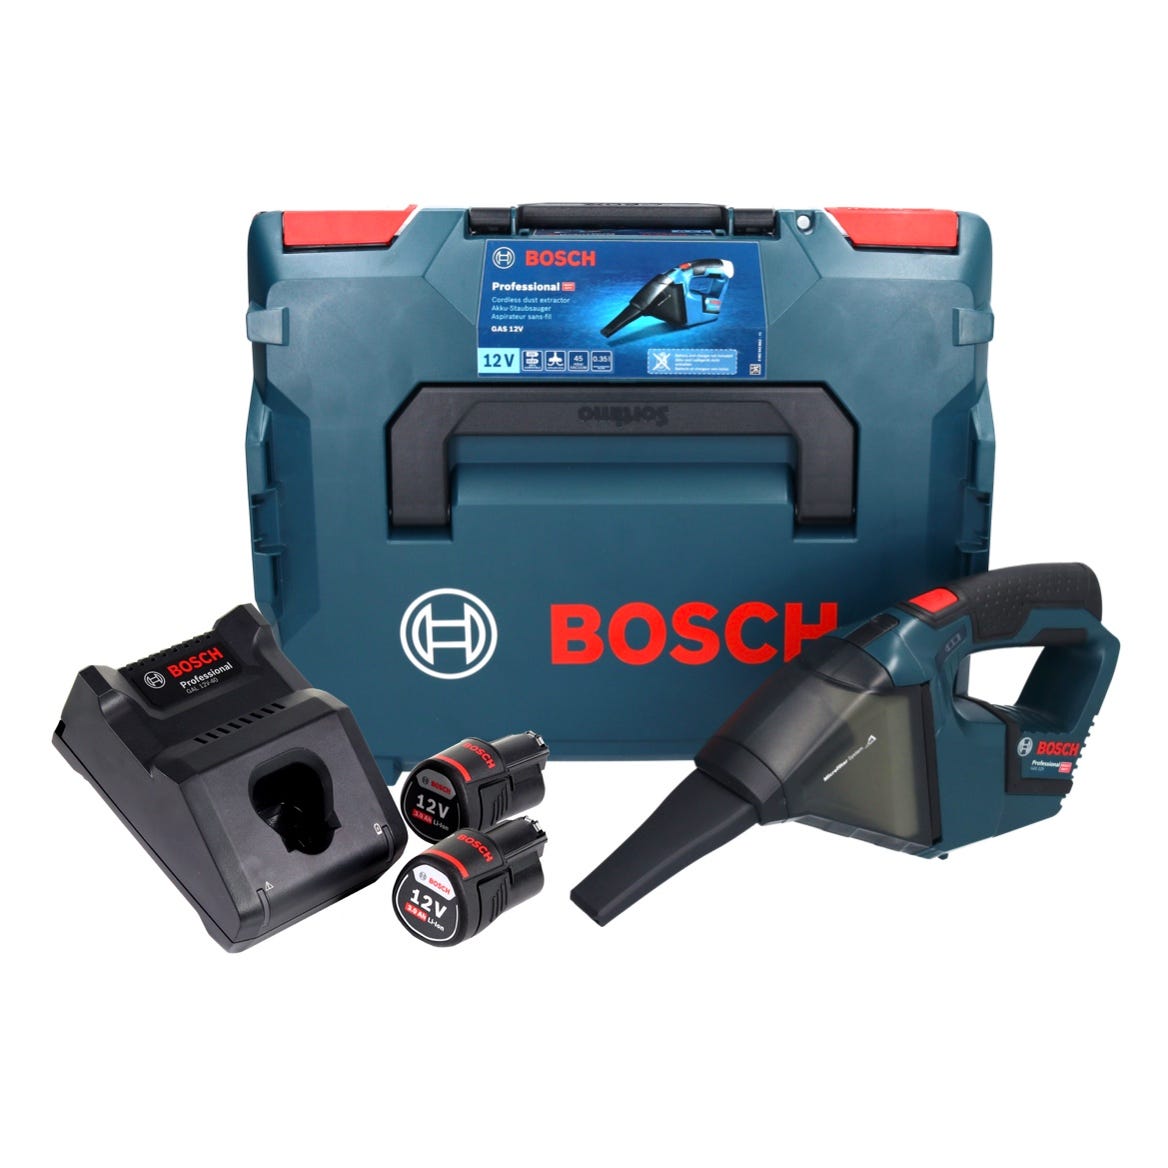 Aspirateur sans fil Bosch Professional GAS 12V, avec 2 batteries